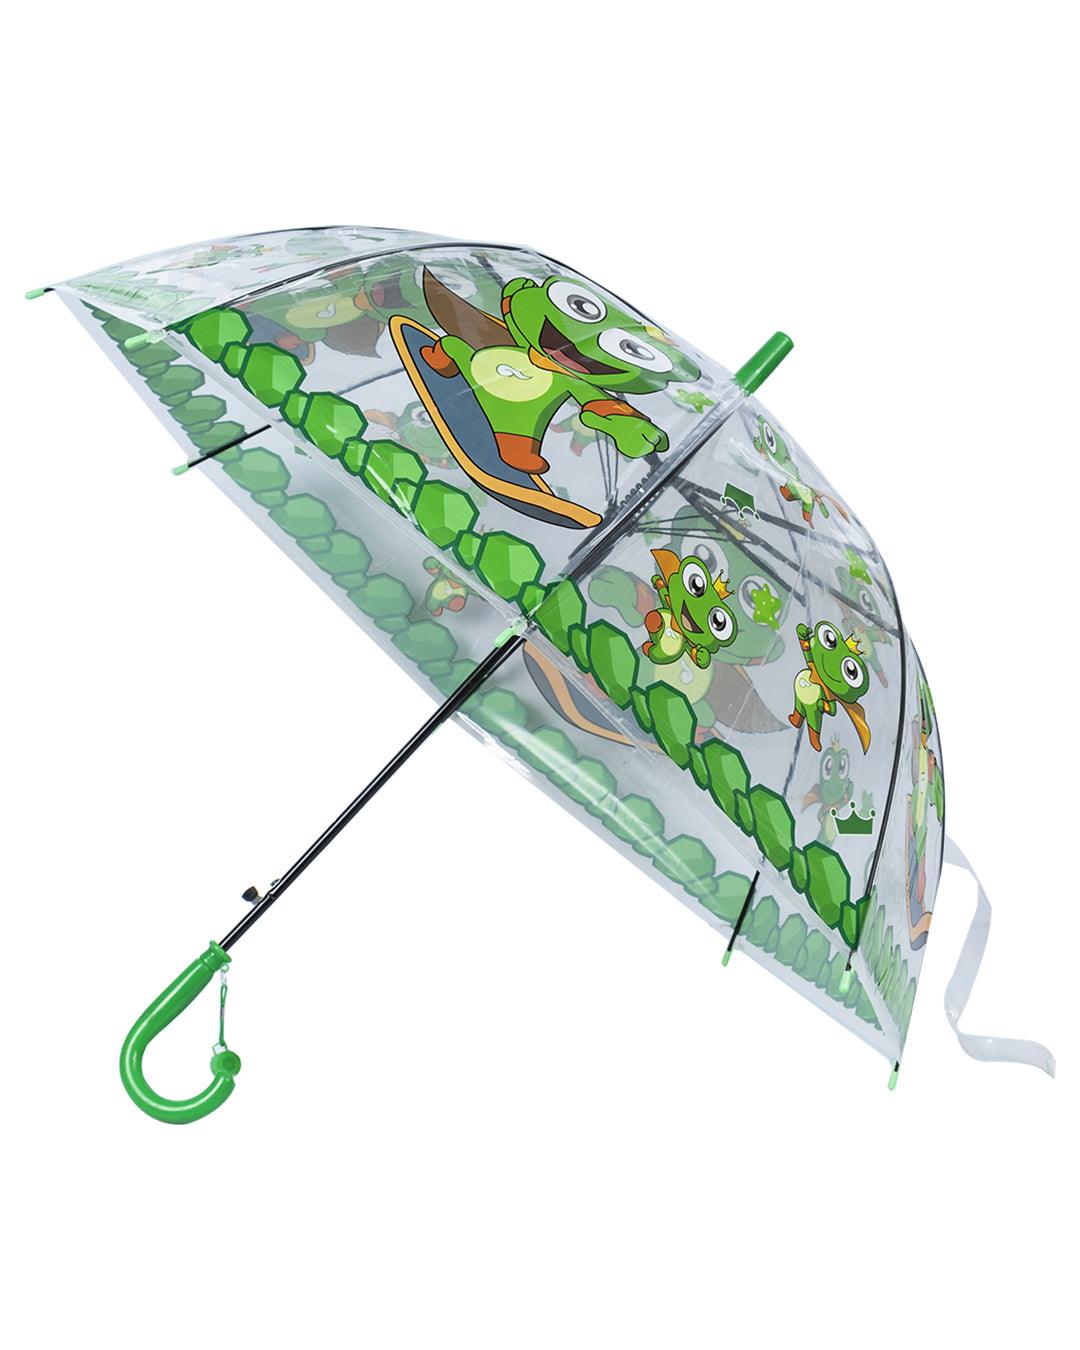 Kids Umbrella, Cartoon Print, Green, Plastic - MARKET 99